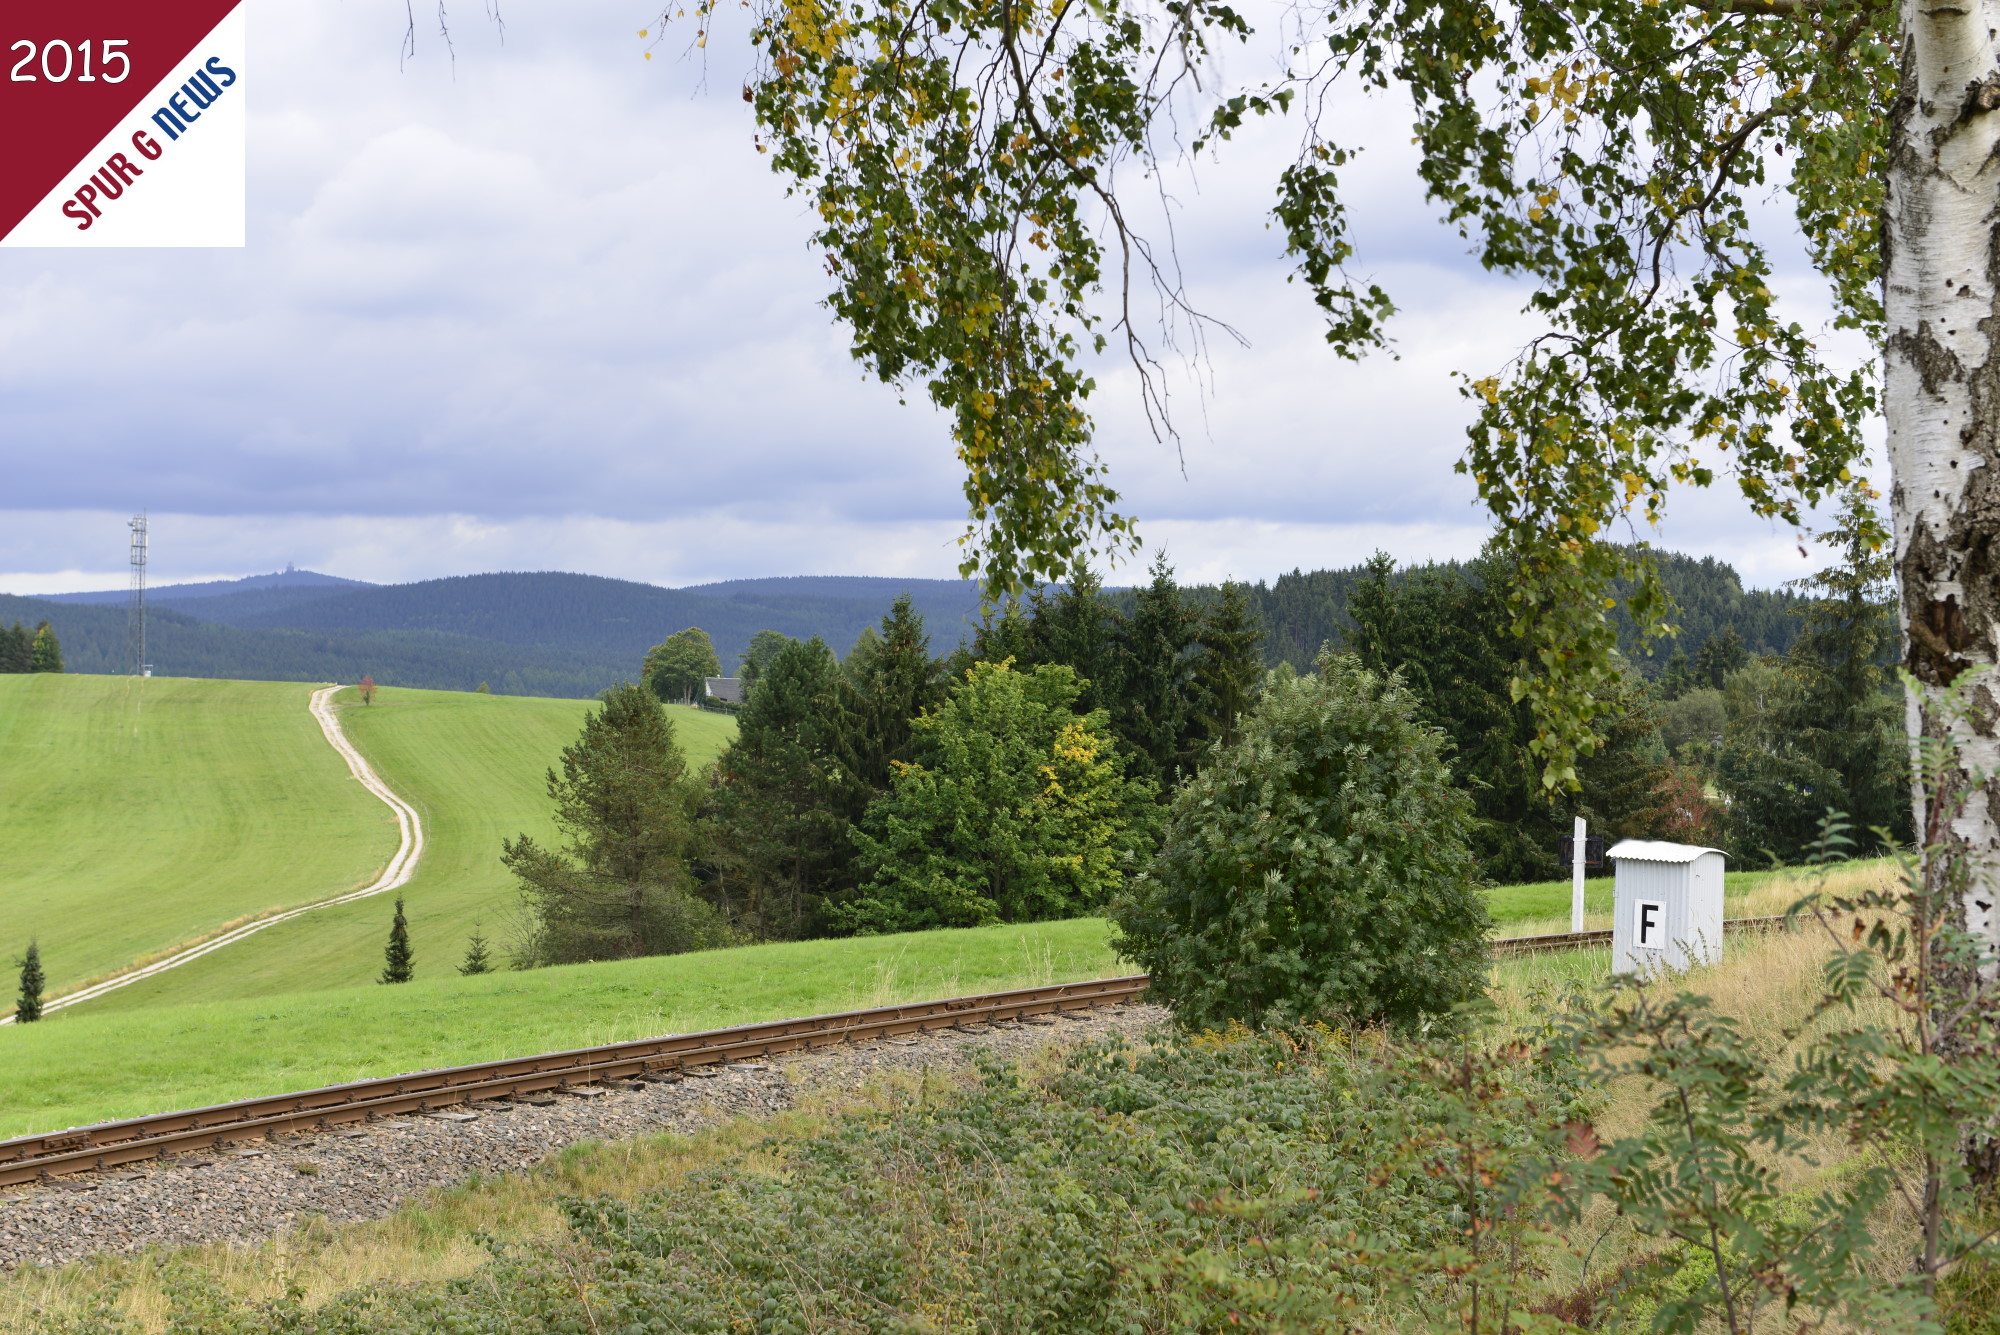 Ein Bild ohne Lok oder Zug! So herrlich ist die Landschaft in Sachsen am Sonntag, den 27. September 2015 gewesen. Kurz hinter dem Bahnhof Schnheide mit Blick Richtung Annaberg mit dem Aussichtsturm auf den Phlberg.  